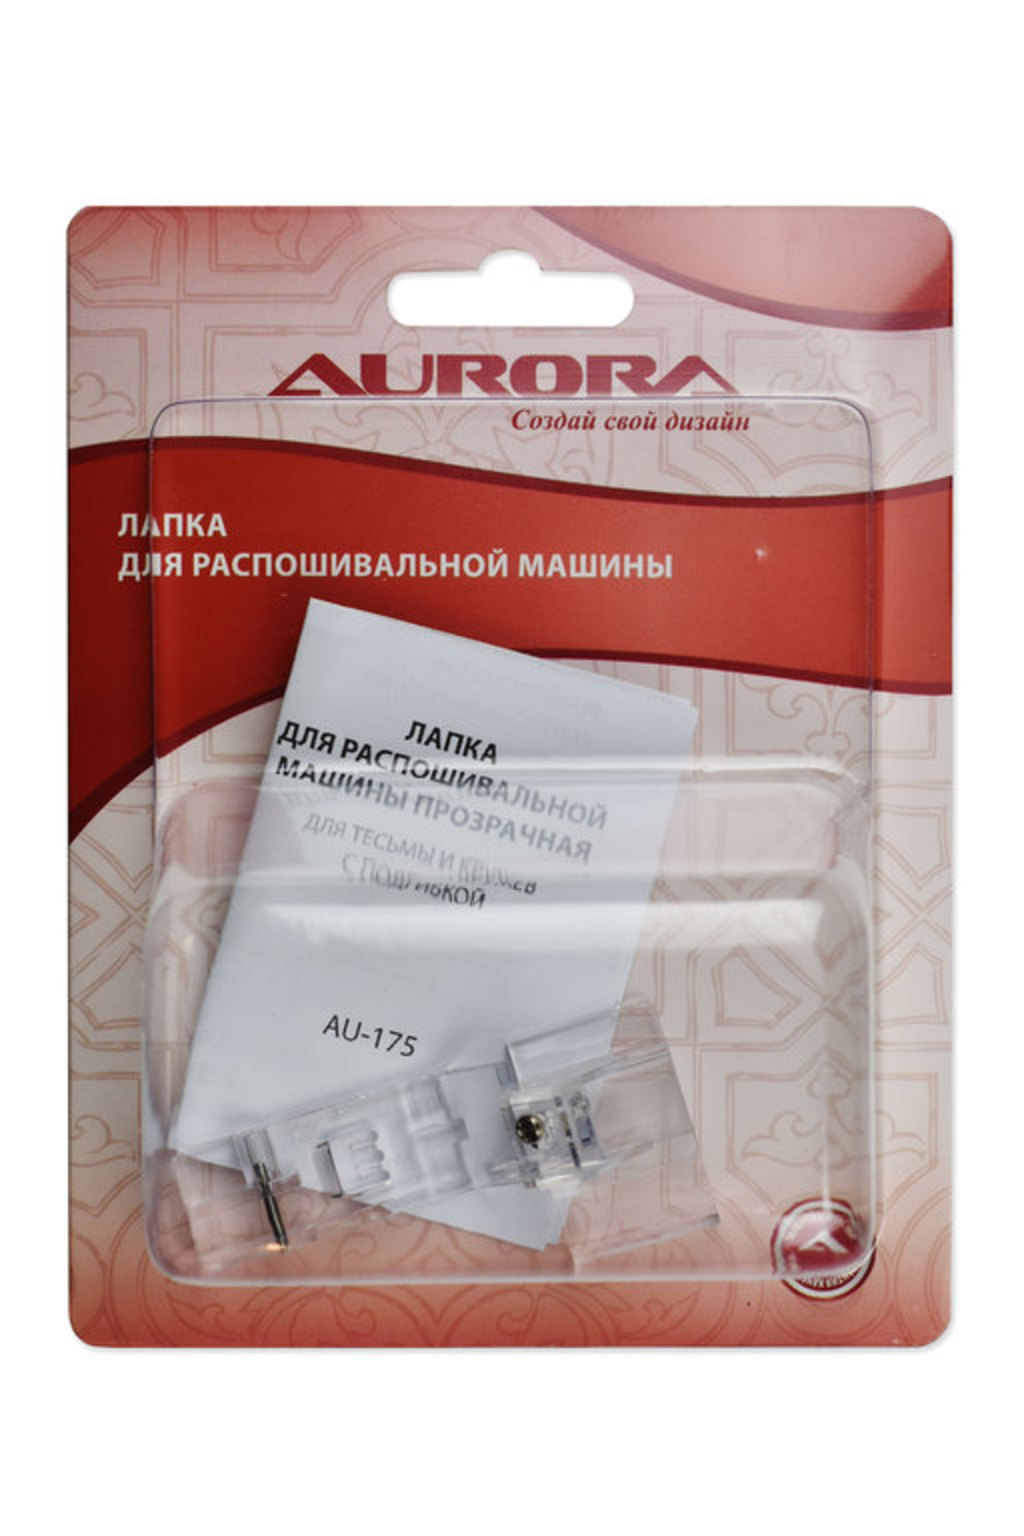 Лапка для распошивальной машины для тесьмы и кружев с подгибкой  Aurora AU-175 лапка для швейной машины для бахромы au 146 aurora